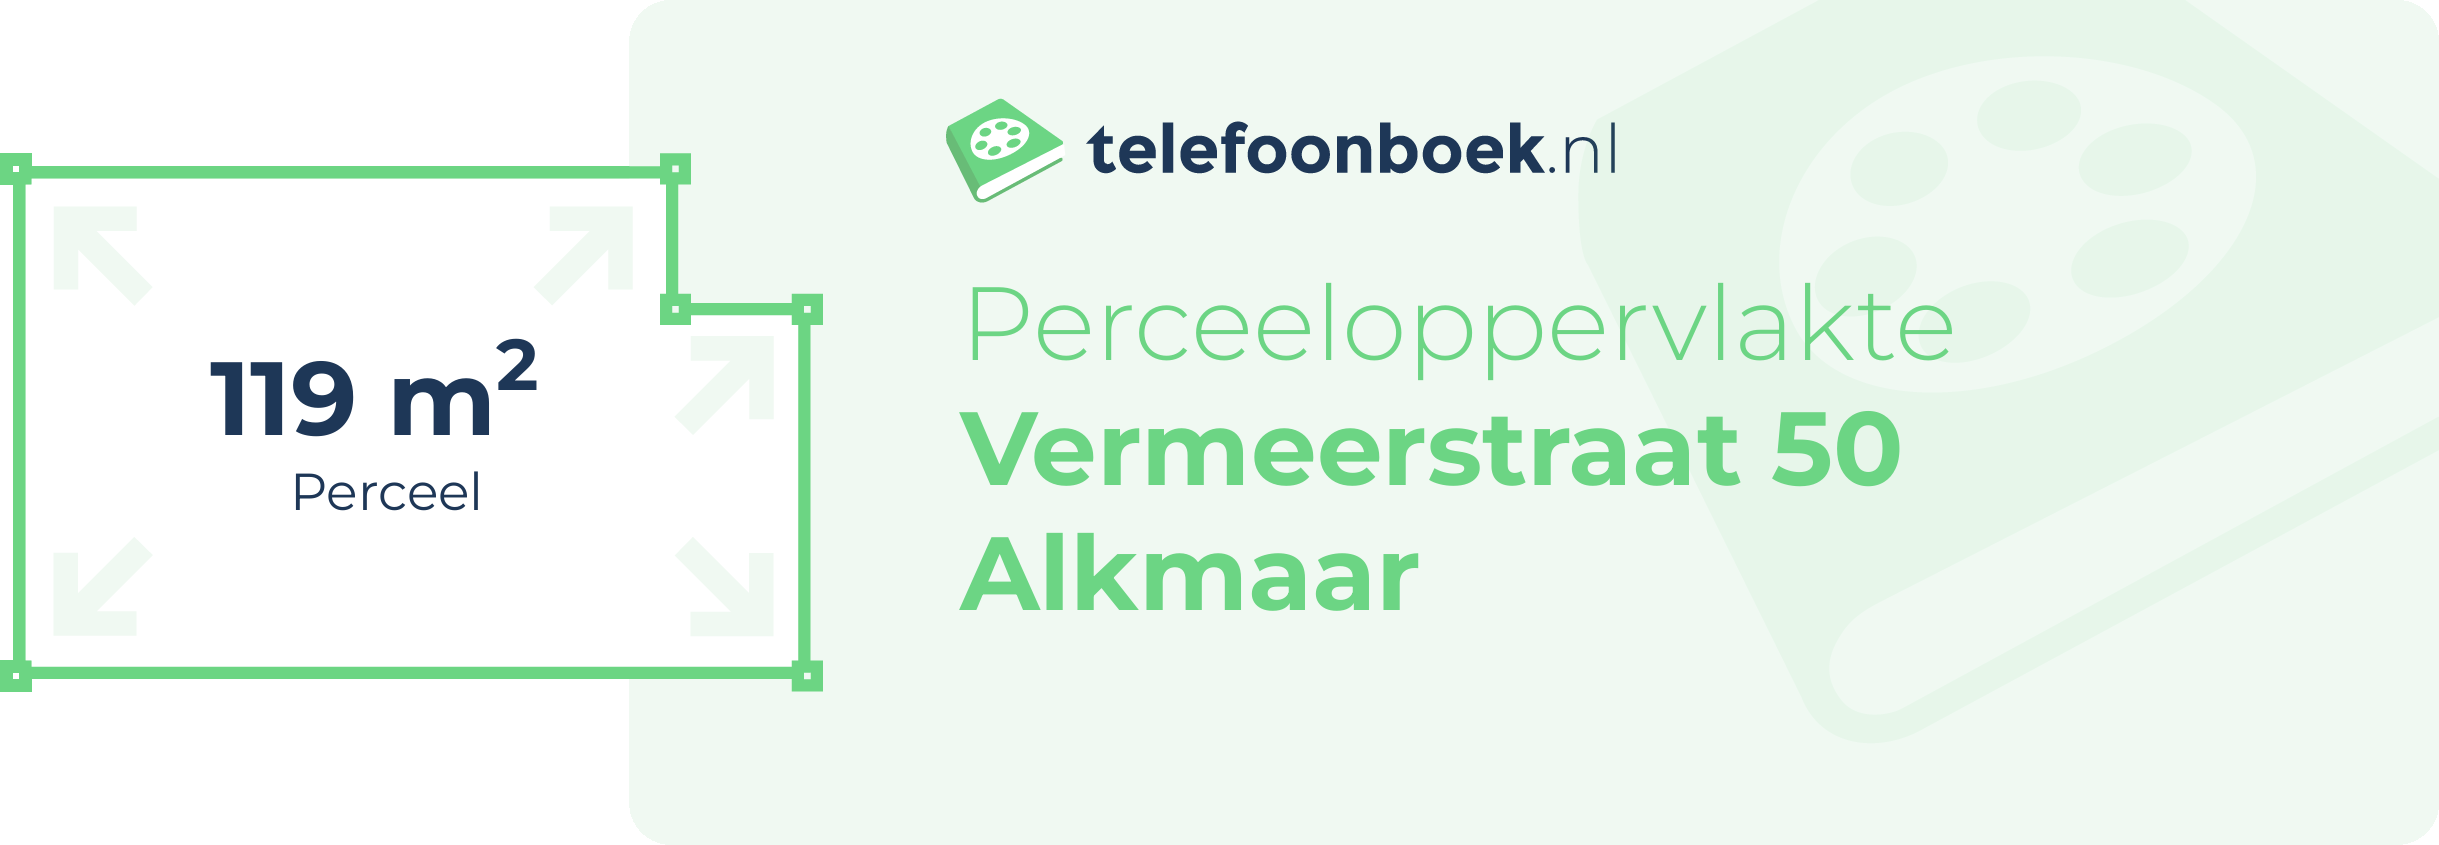 Perceeloppervlakte Vermeerstraat 50 Alkmaar